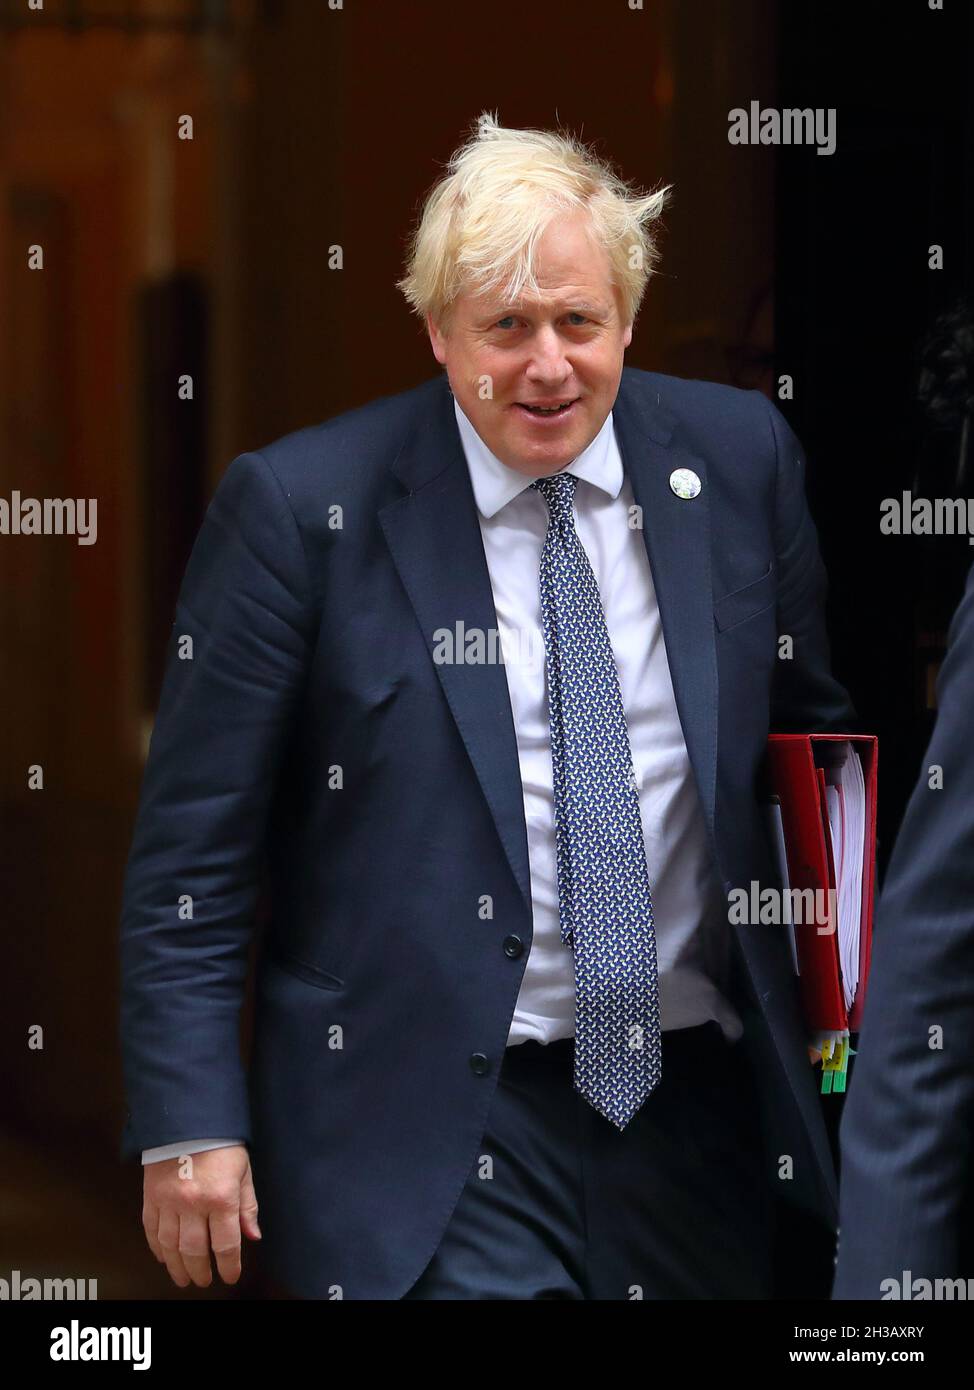 Londres, Inglaterra, Reino Unido. 27th Oct, 2021. El optimista Primer Ministro Boris Johnson deja la calle Downing Nº 10 para que la Cámara de los Comunes escuche el discurso sobre el presupuesto de Rishi Sunak. Crédito: Uwe Deffner / Alamy Live News Foto de stock